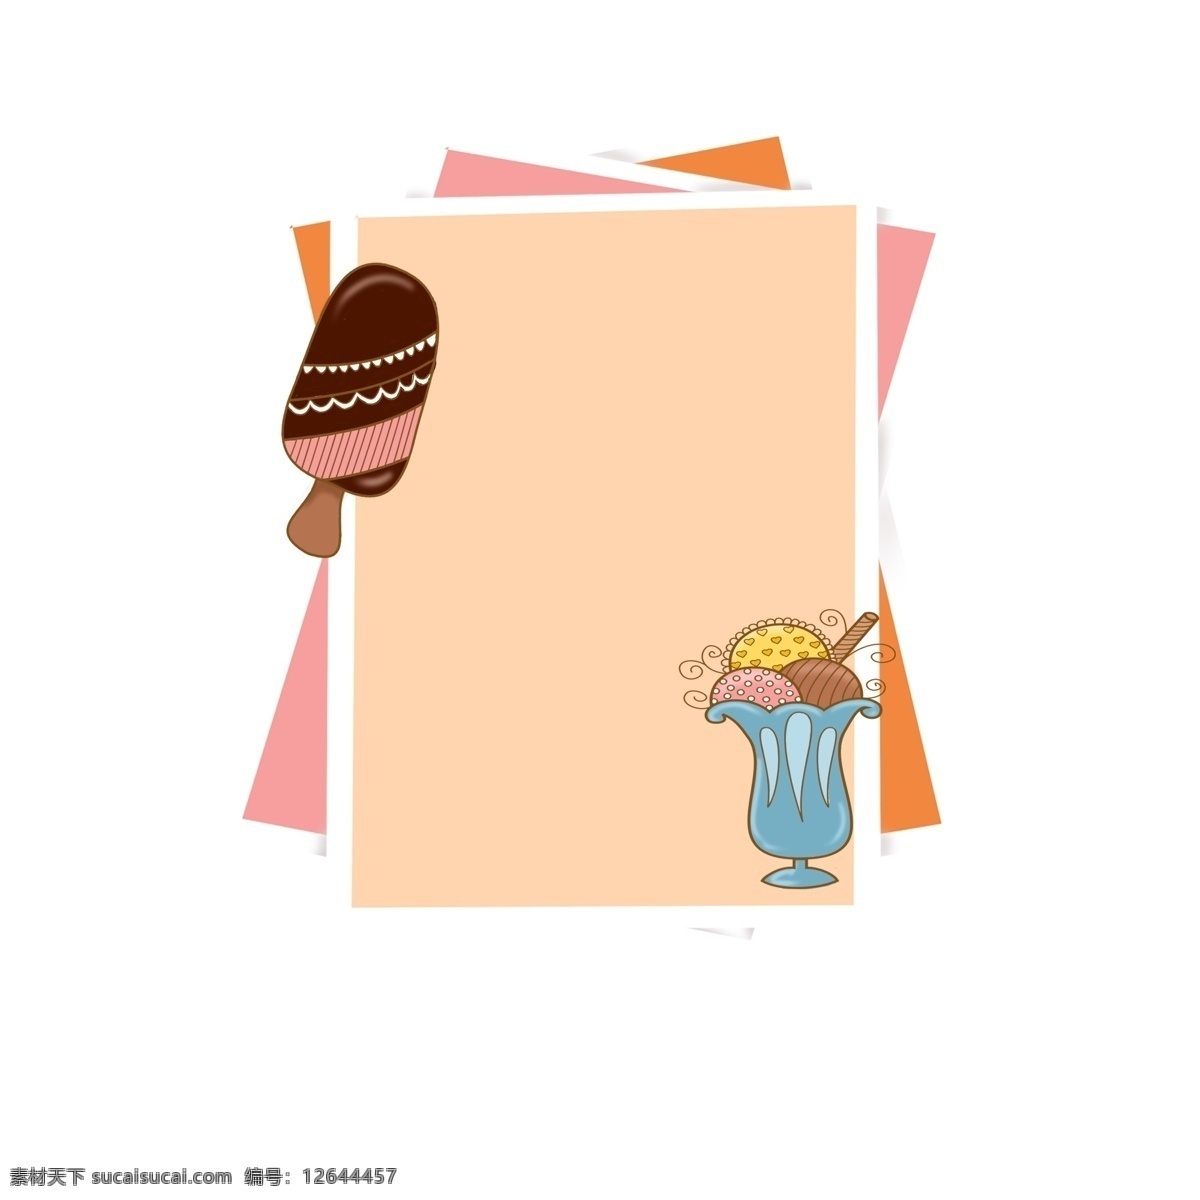 手绘 可爱 冰激凌 边框 冰淇淋 甜品 粉色 可商品 食物